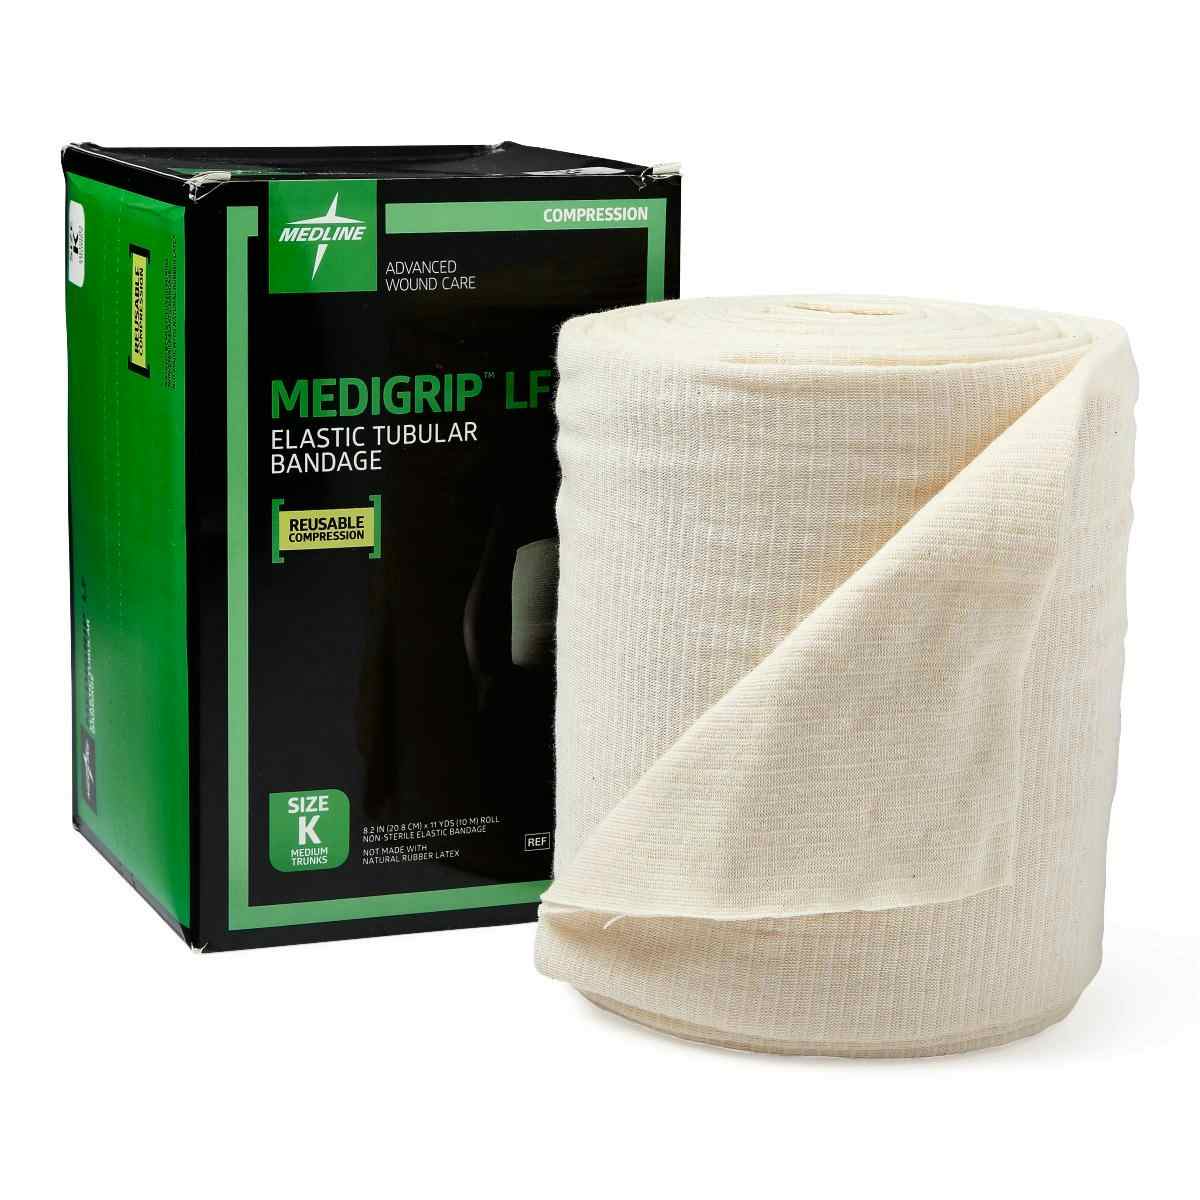 Medline Medigrip Latex Free Elastic Tubular Bandages, MSC9508LF, Size K: 8-1/4" W (20.96 cm) X 11 yd. - 1 Roll